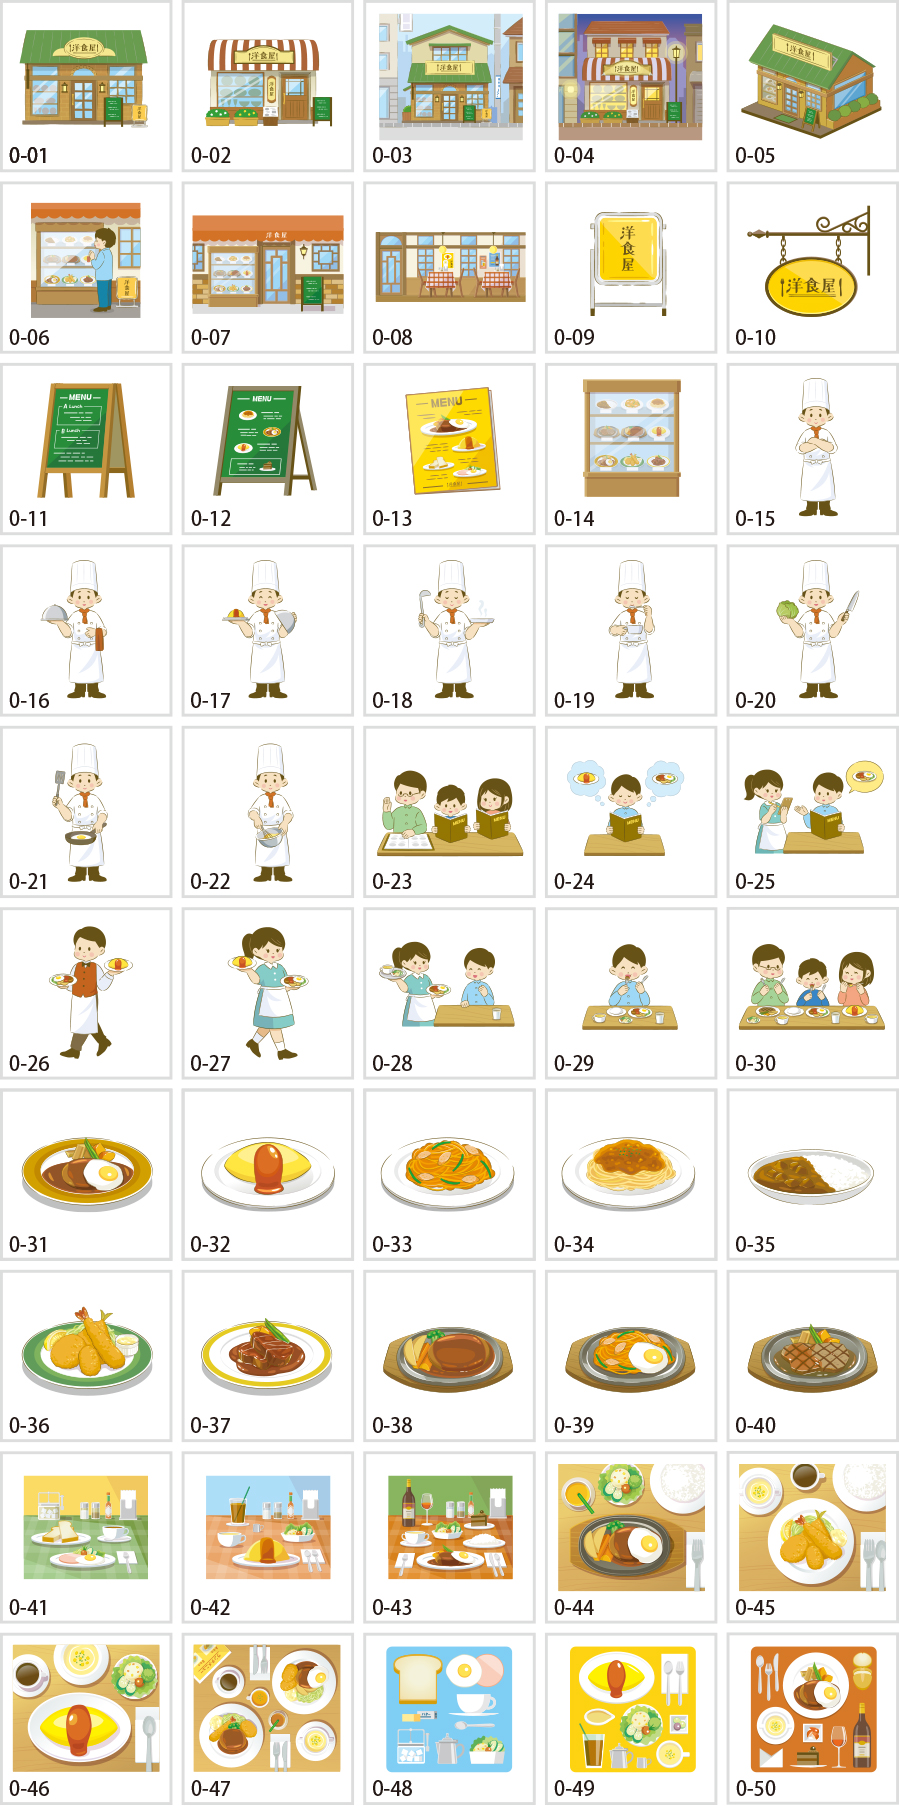 Restaurant illustrations